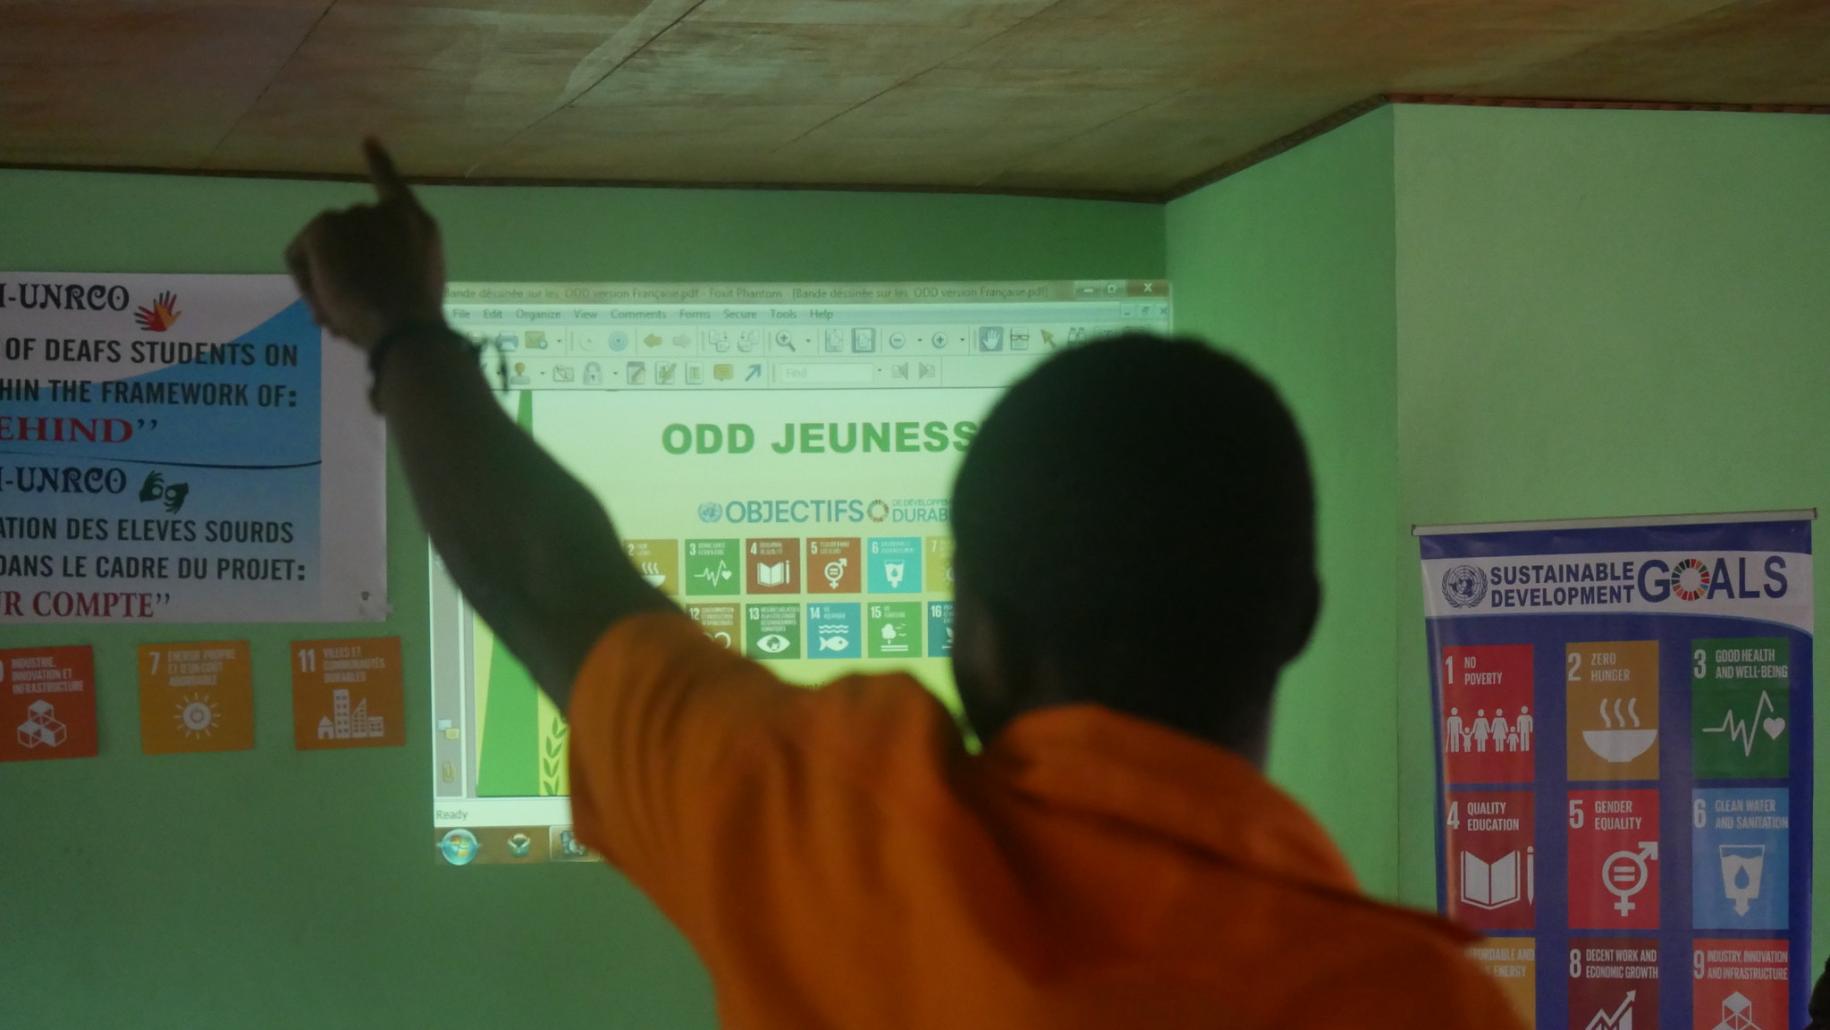 صبي صغير يشاهد شاشة تعرض أهداف التنمية المستدامة.